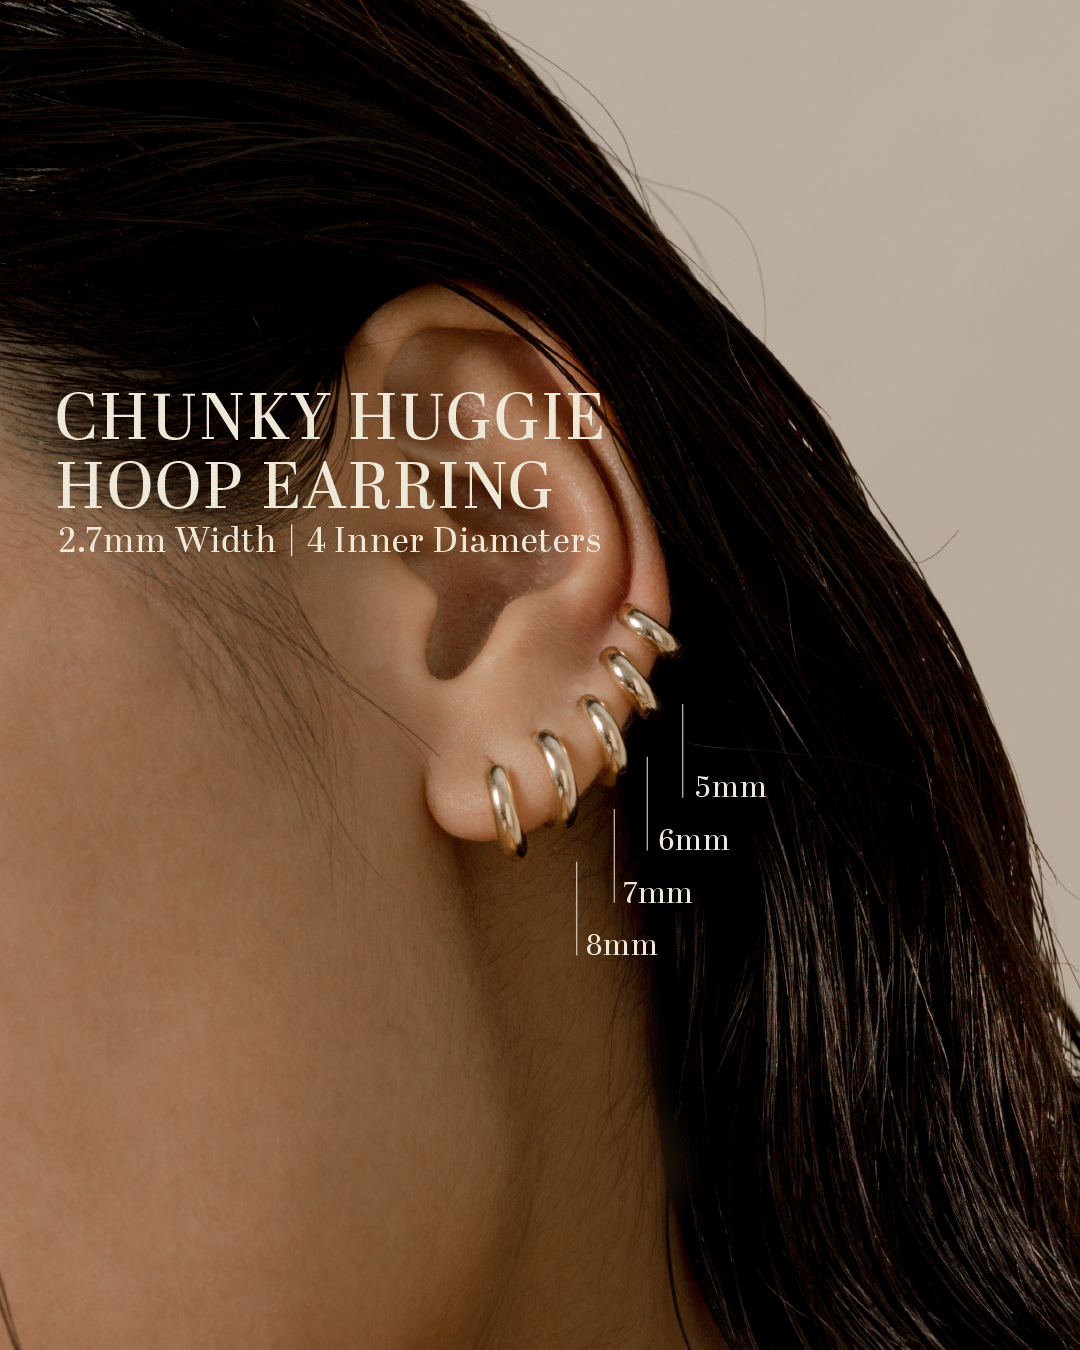 Chunky Huggie Hoop Earring - 5mm